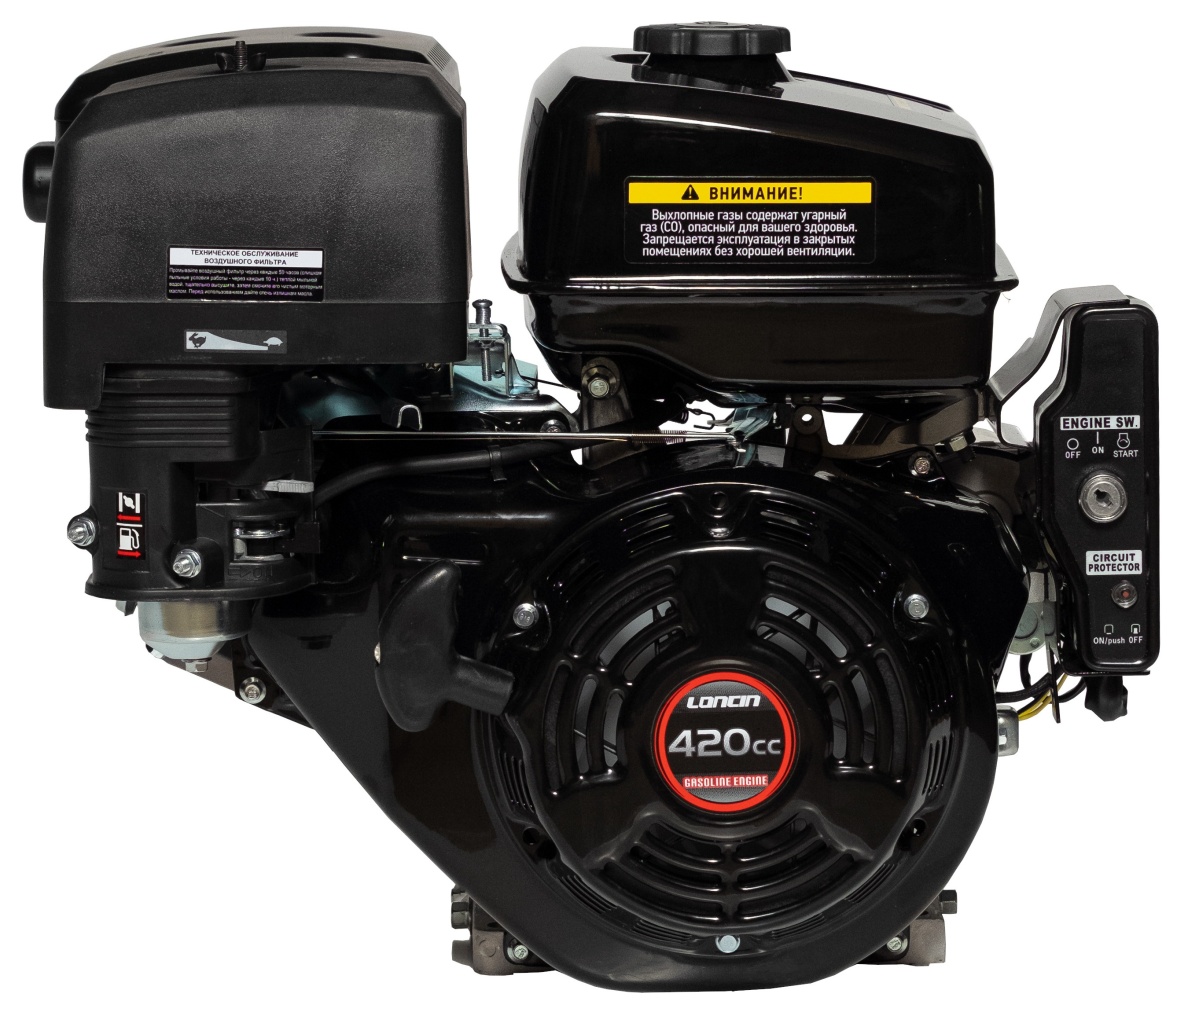 Двигатель Loncin G420FD 15лс, катушка 0,6 Ампера, запуск Электрический и ручной старт